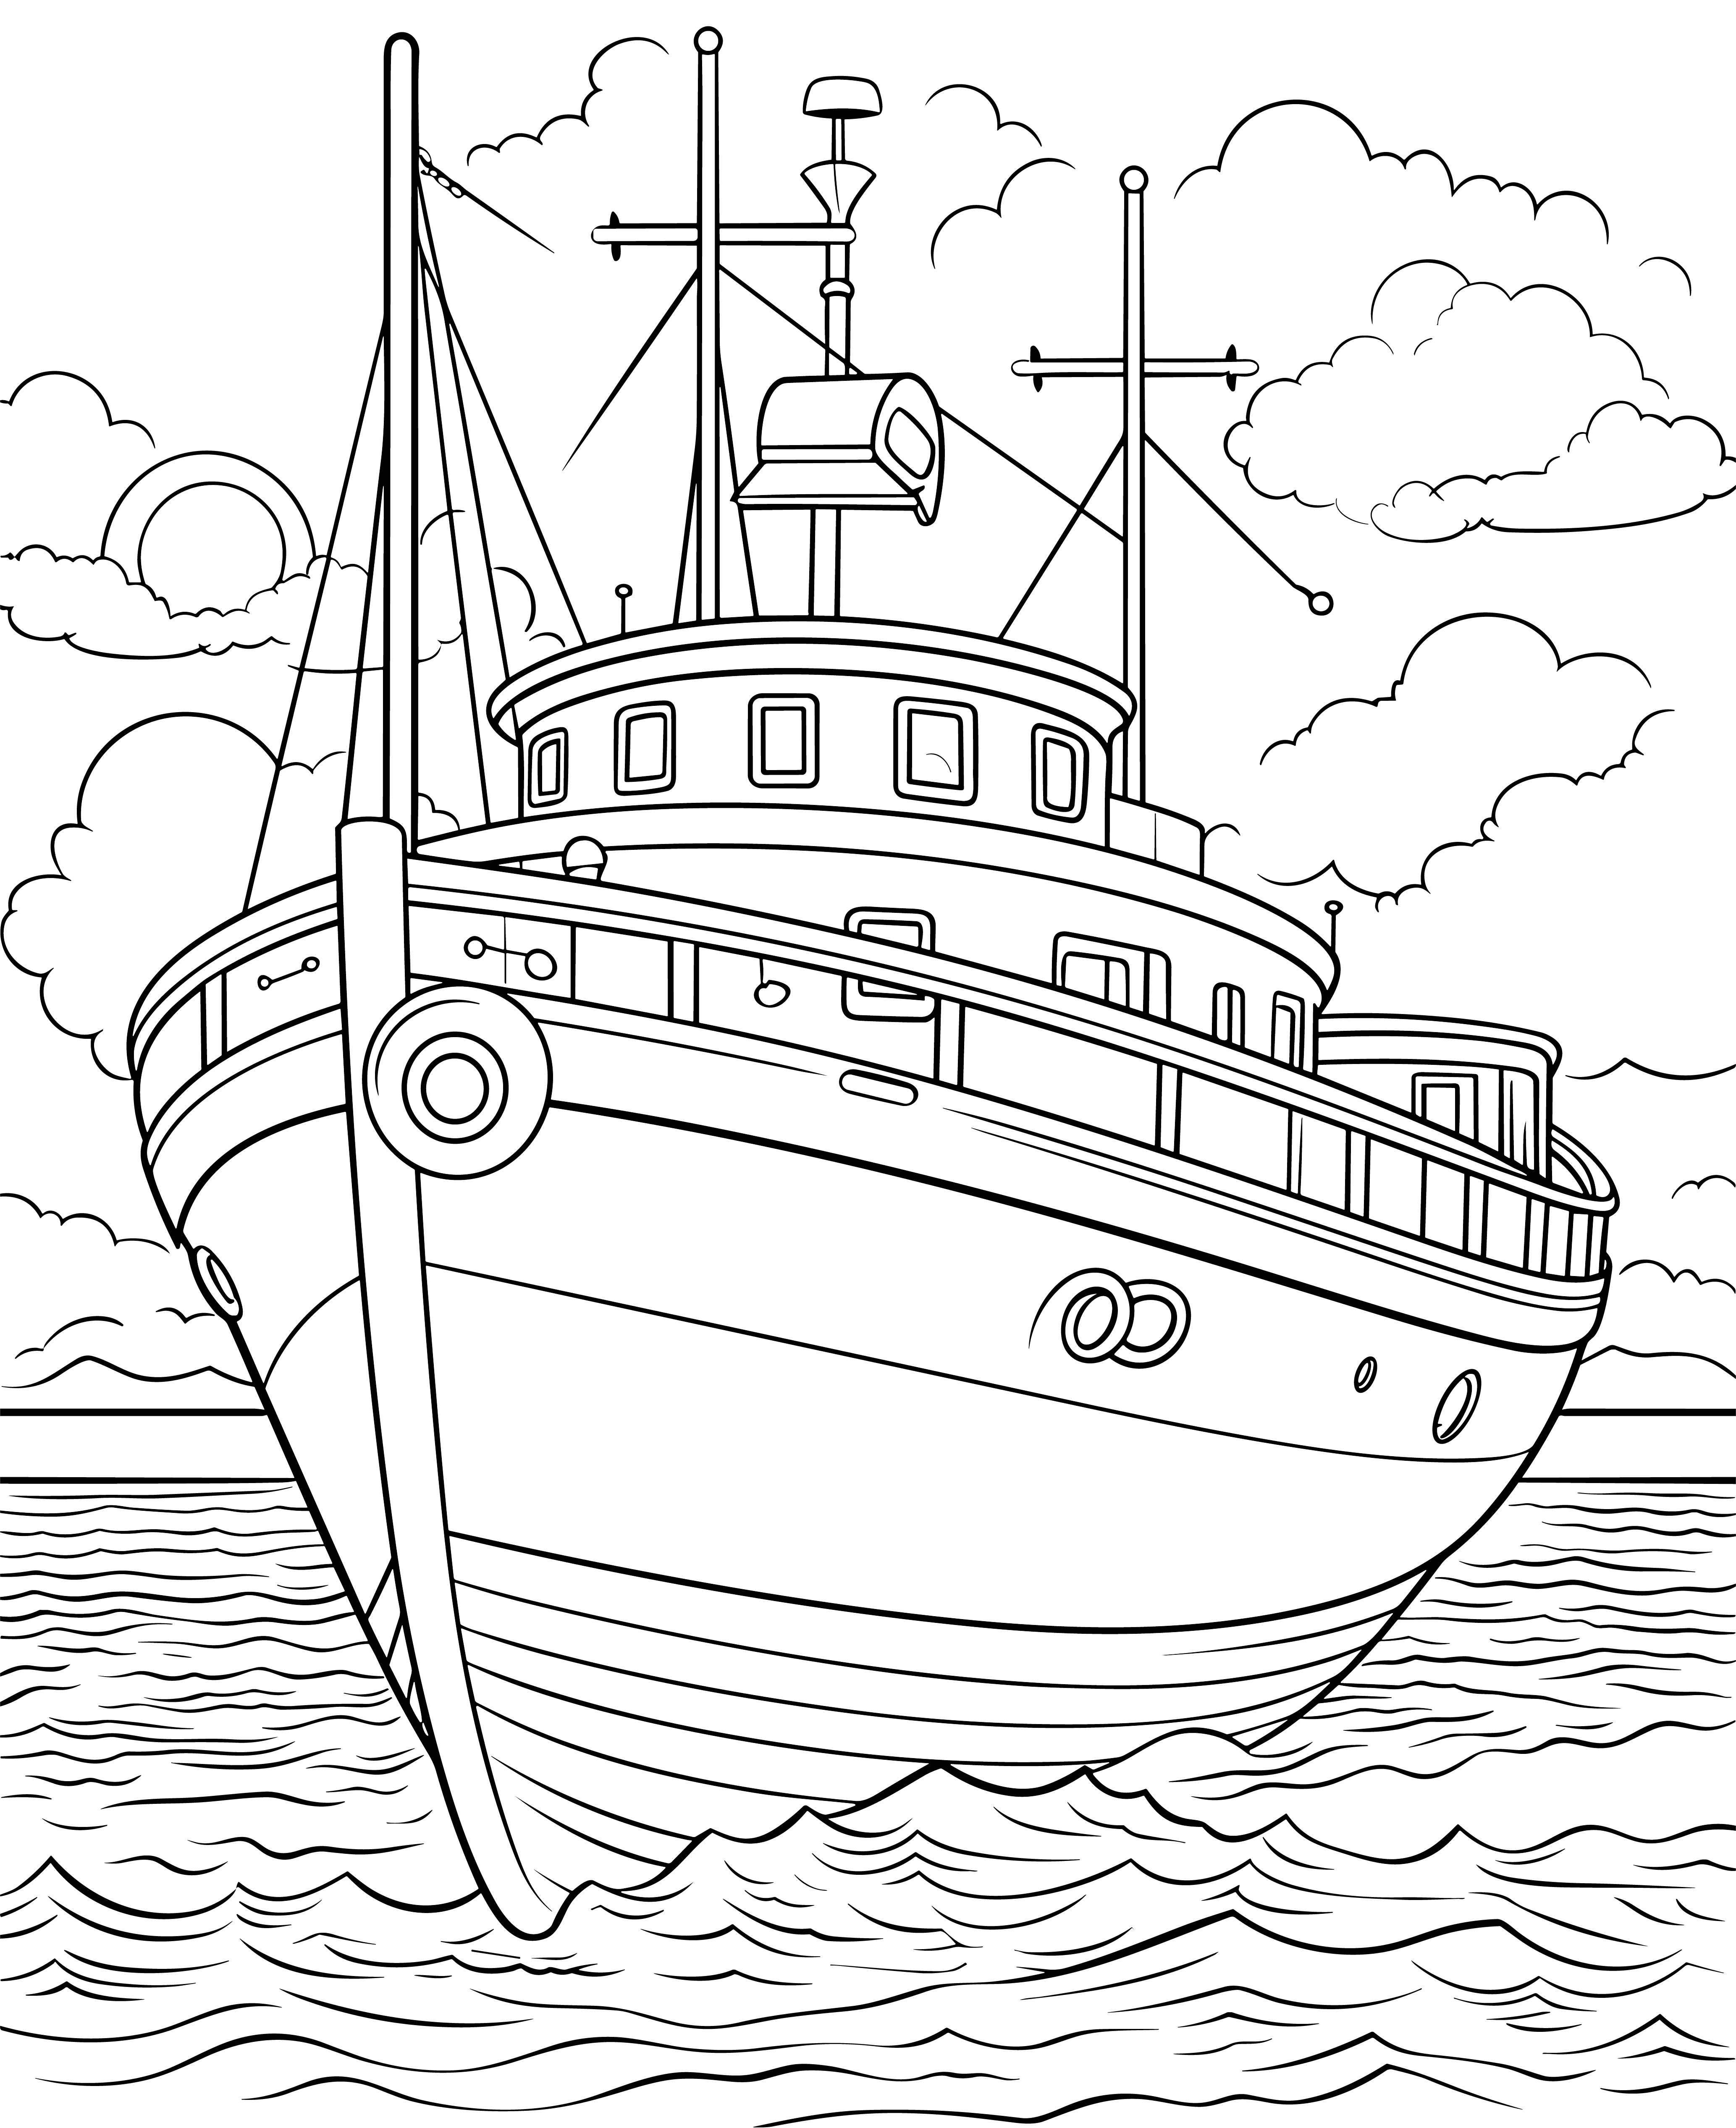 Раскраска корабль в море «Лазурные глубины» формата А4 в высоком качестве